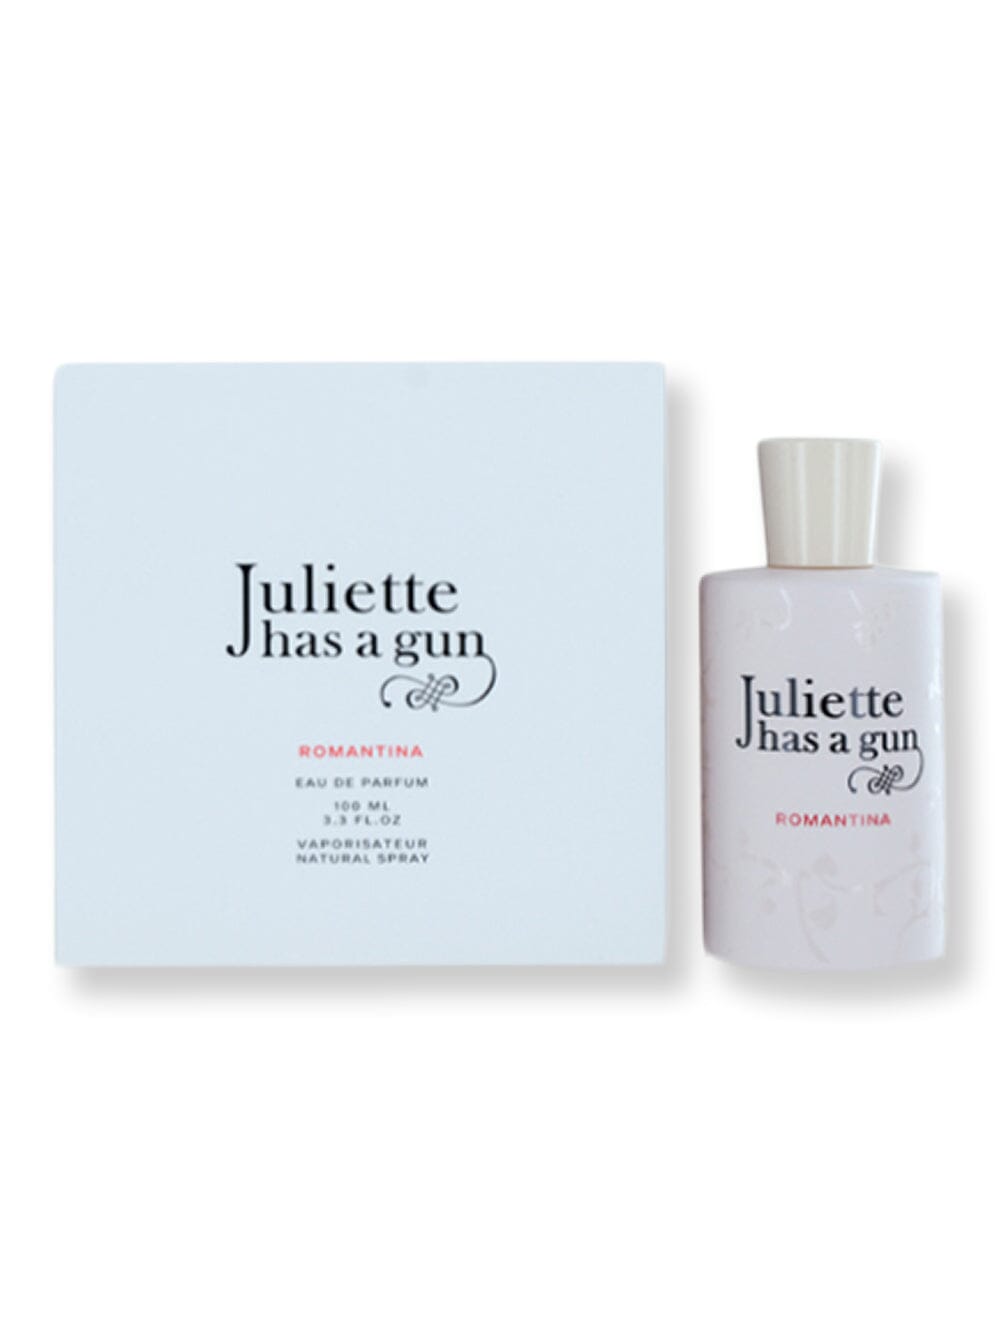 Juliette has a Gun Juliette has a Gun Romantina Has A Gun EDP Spray 3.4 oz100 ml Perfume 